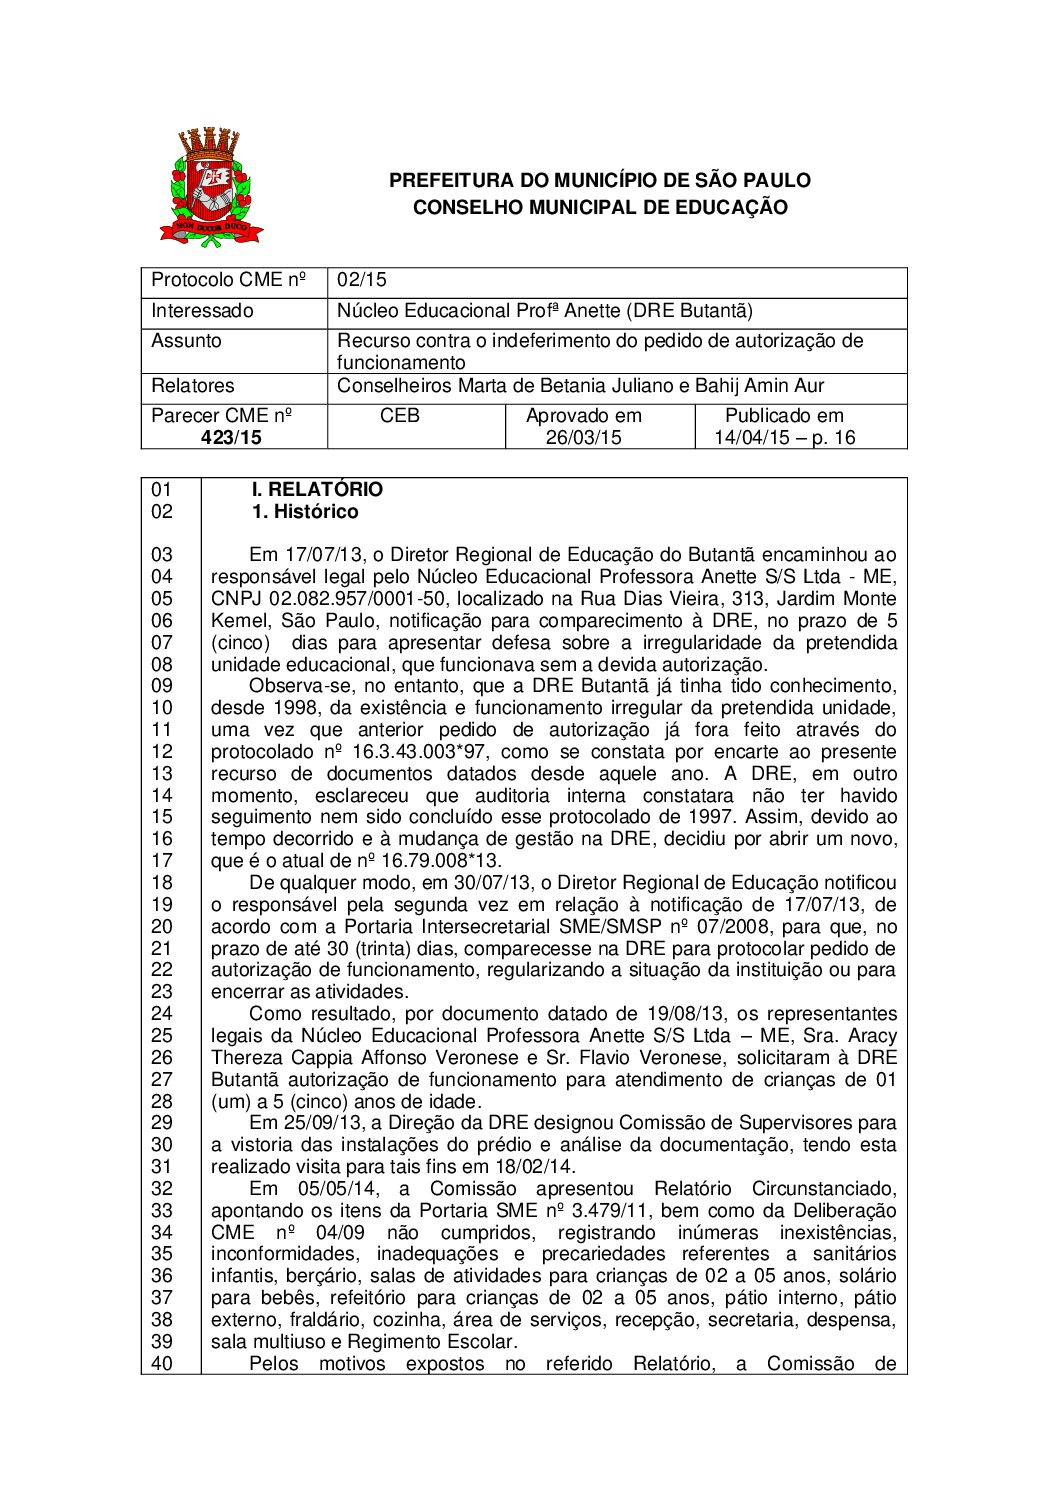 Parecer CME nº 423/2015 - Núcleo Educacional Profª Anette (DRE Butantã) - Recurso contra o indeferimento do pedido de autorização de funcionamento 